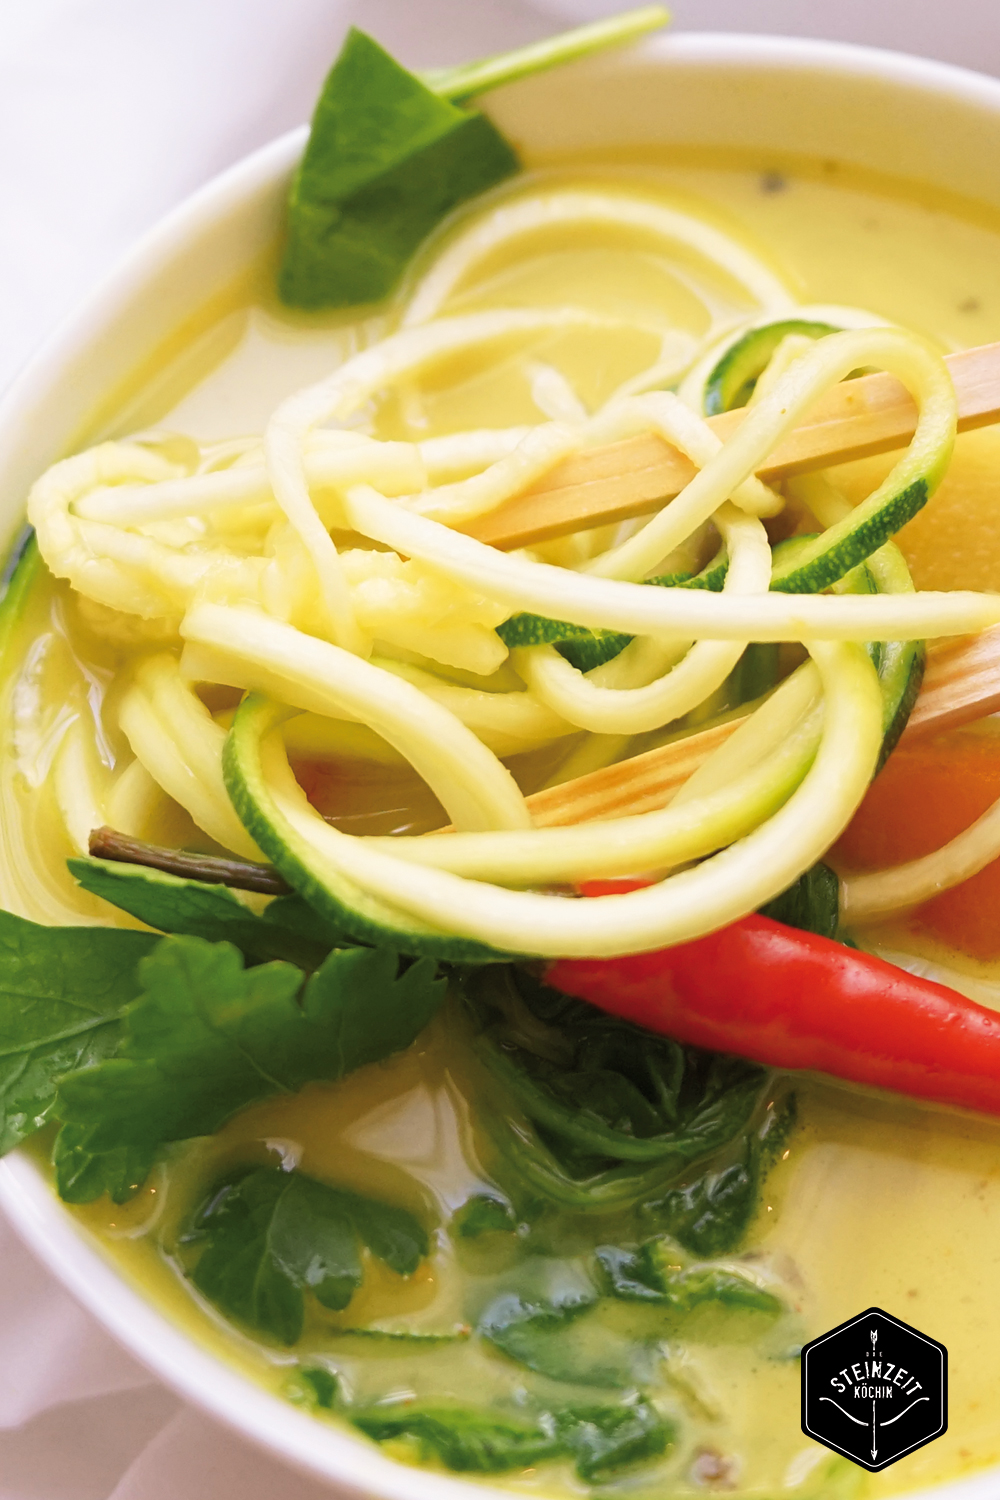 Thai Suppe, mit gelbem Curry und Zucchininudeln, zitronig frisch mit etwas Schärfe. Wenig kohlenhydrate, nur wenige Zutaten, ohne laktosefrei, Paleo, gesundes Rezept, schnell zubereitet, gesundes Mittagessen, Abendessen mit wenigen Kalorien